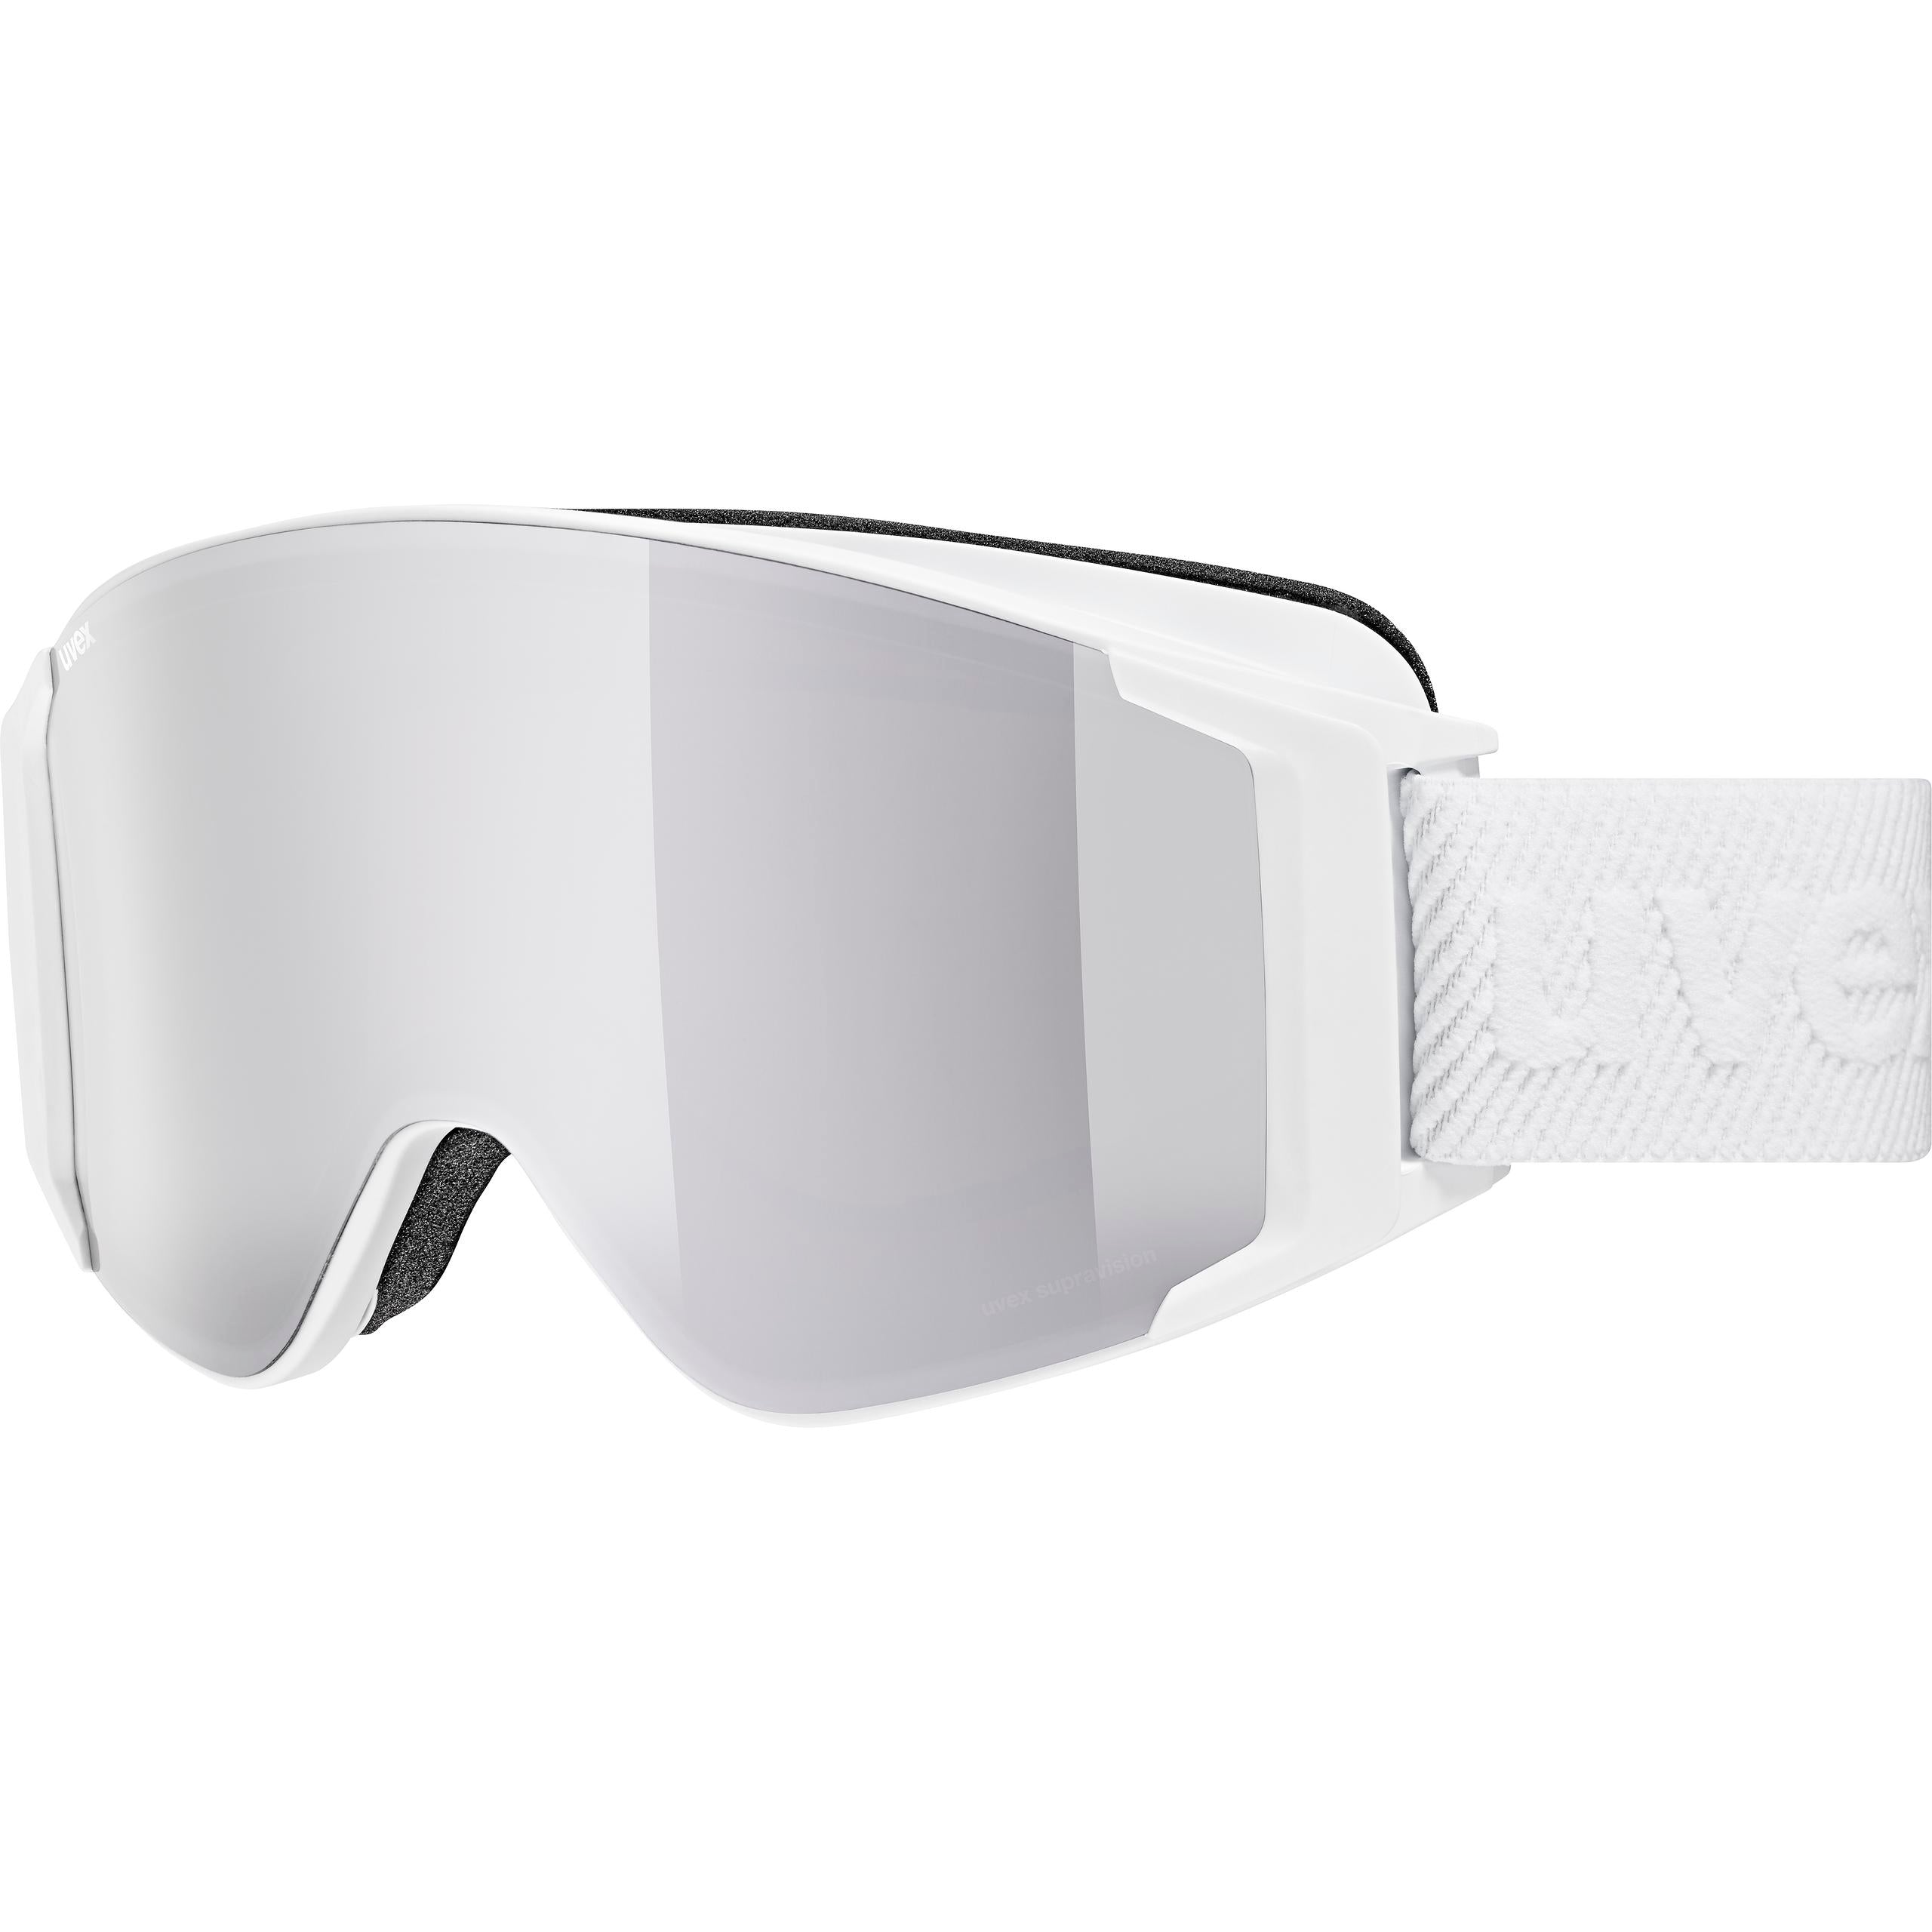 Uvex Adults Ski & Board Goggles - g.gl 3000 TO WHT/SILVR